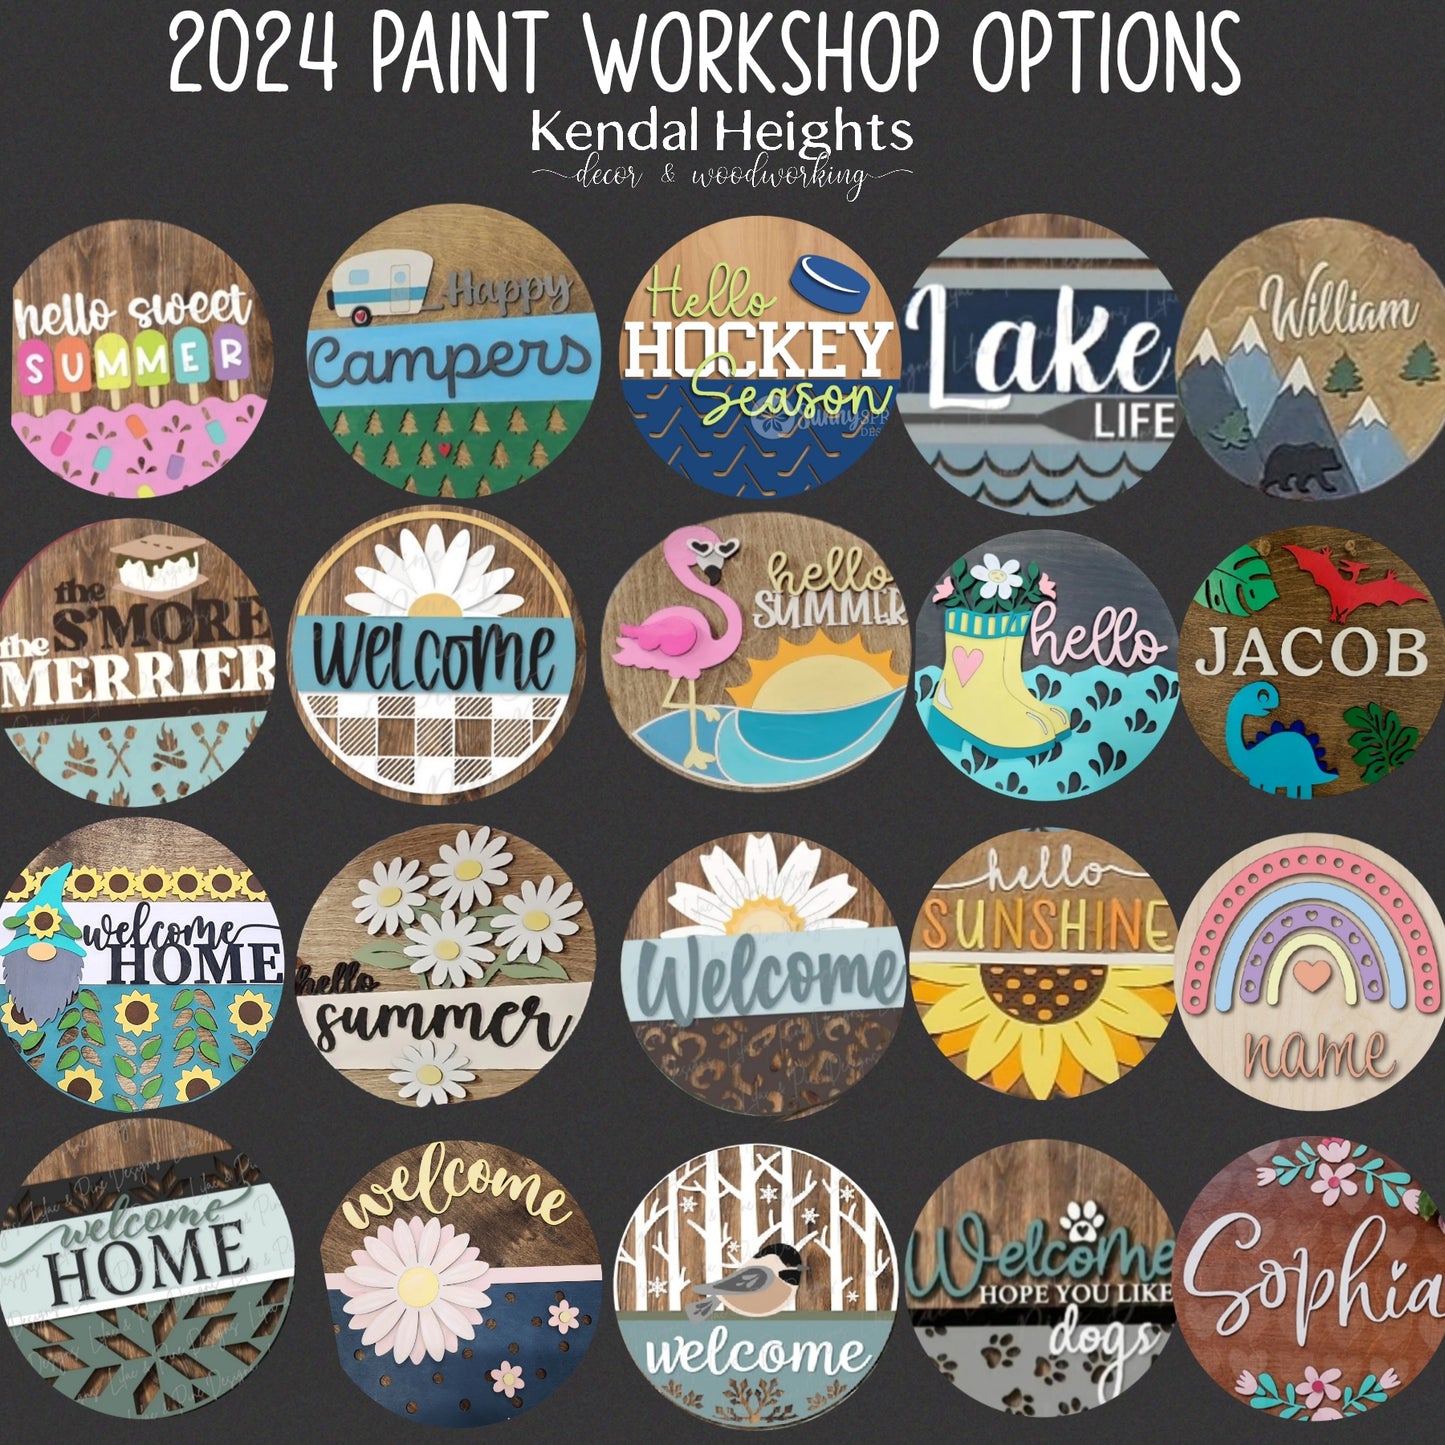 Paint Workshop Events  - Deposit